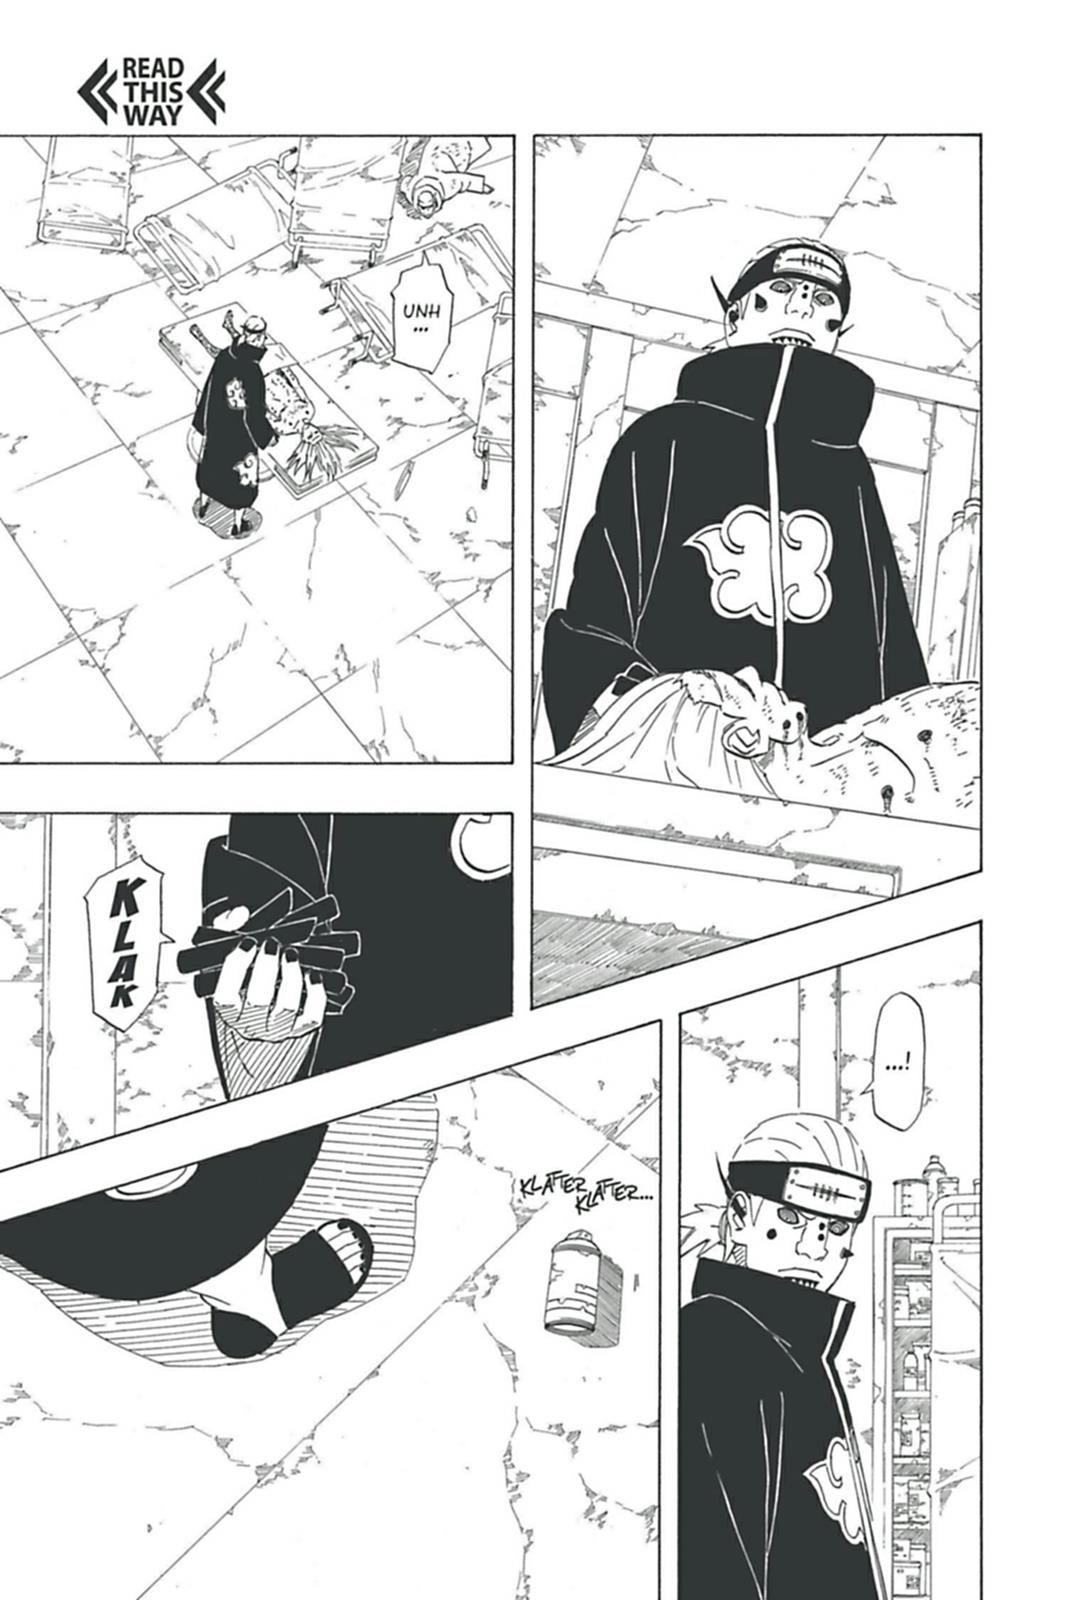 Manga Naruto Shippuden, Chapter 427 Naruto Shippuden Online